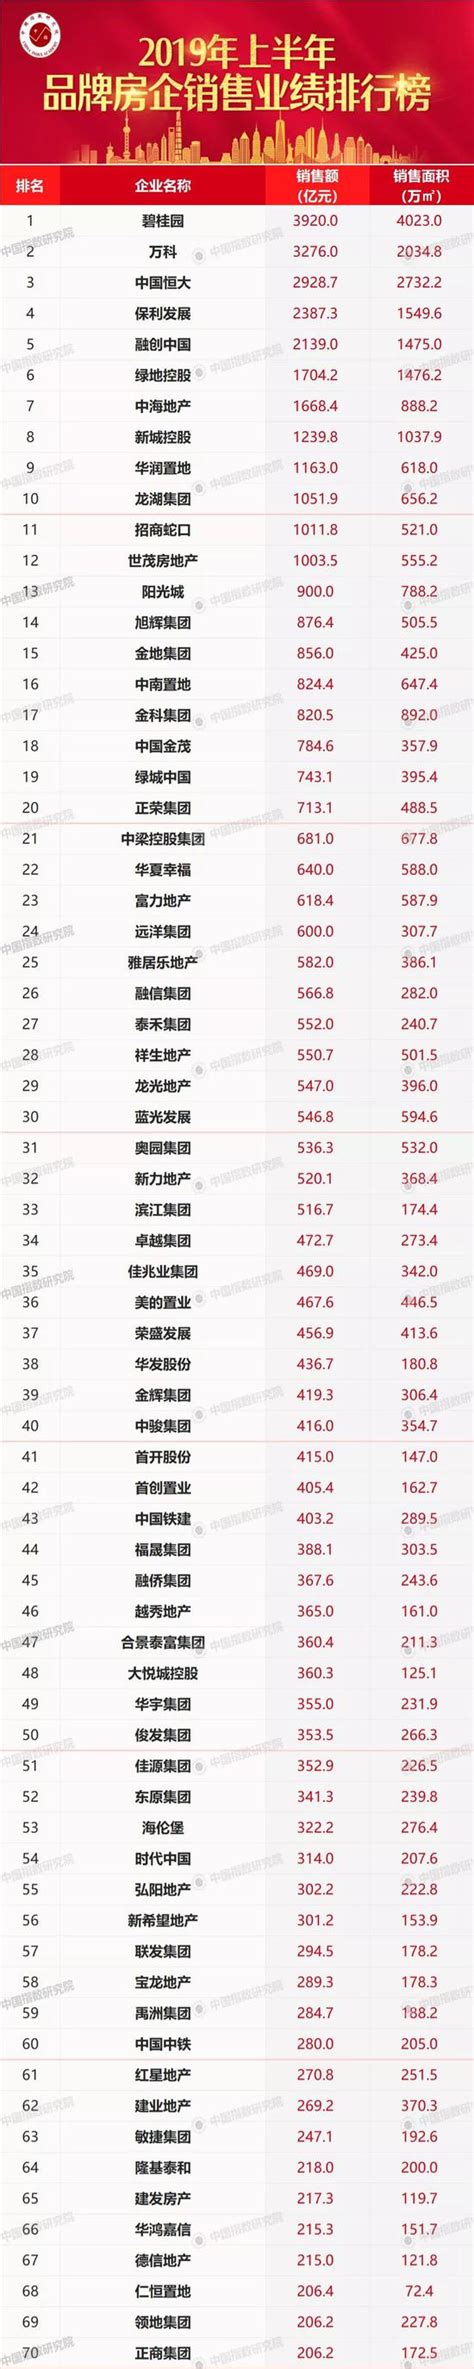 2019年直销业绩排行榜_2019年上半年品牌房企销售业绩排行榜_中国排行网